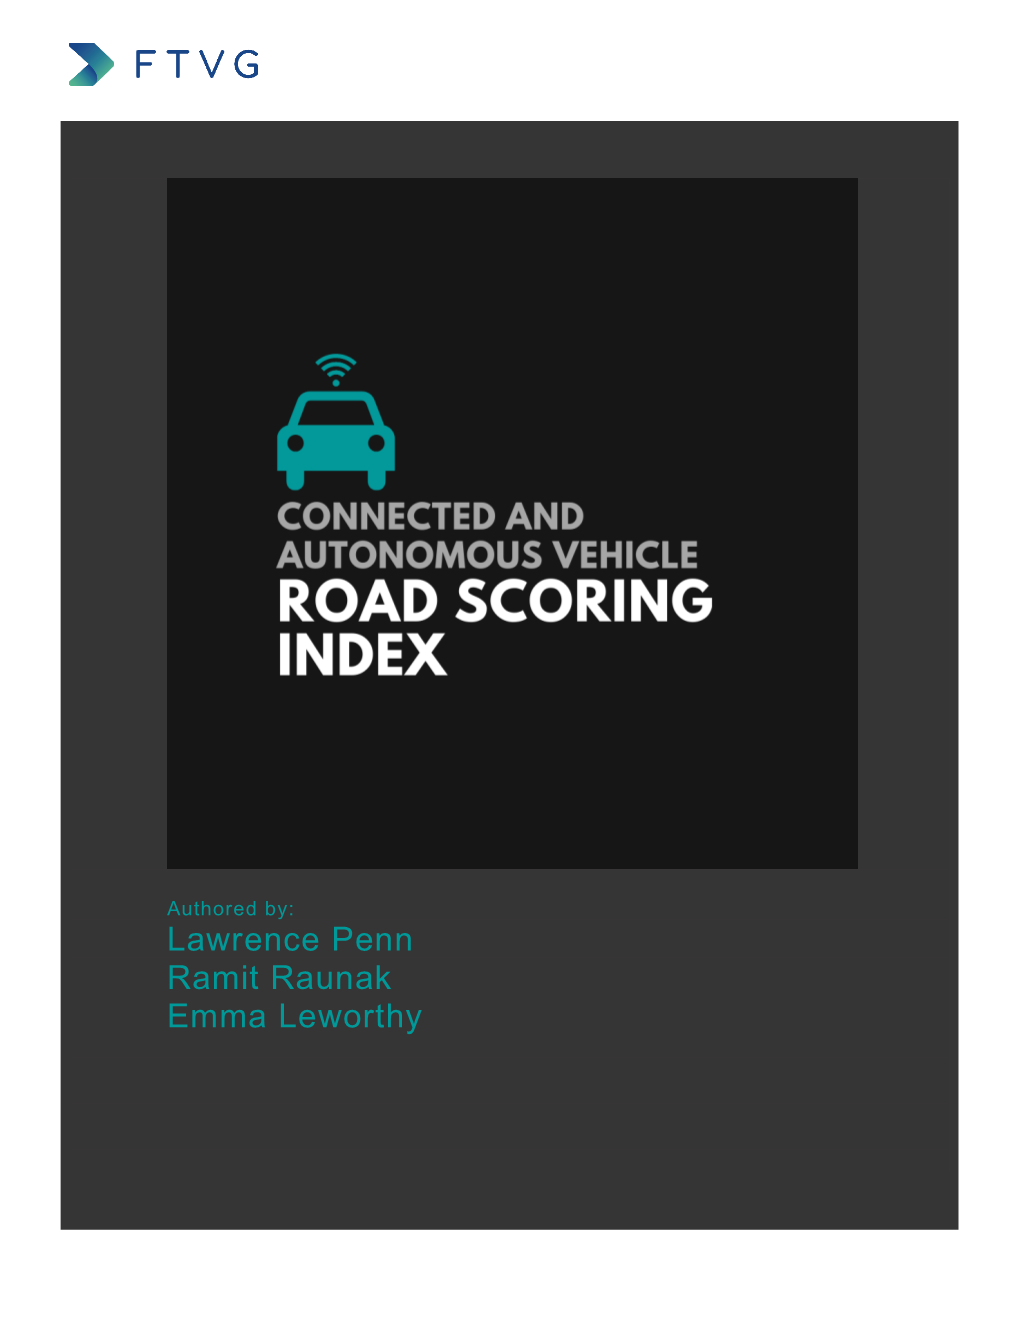 CAV Road Scoring Index